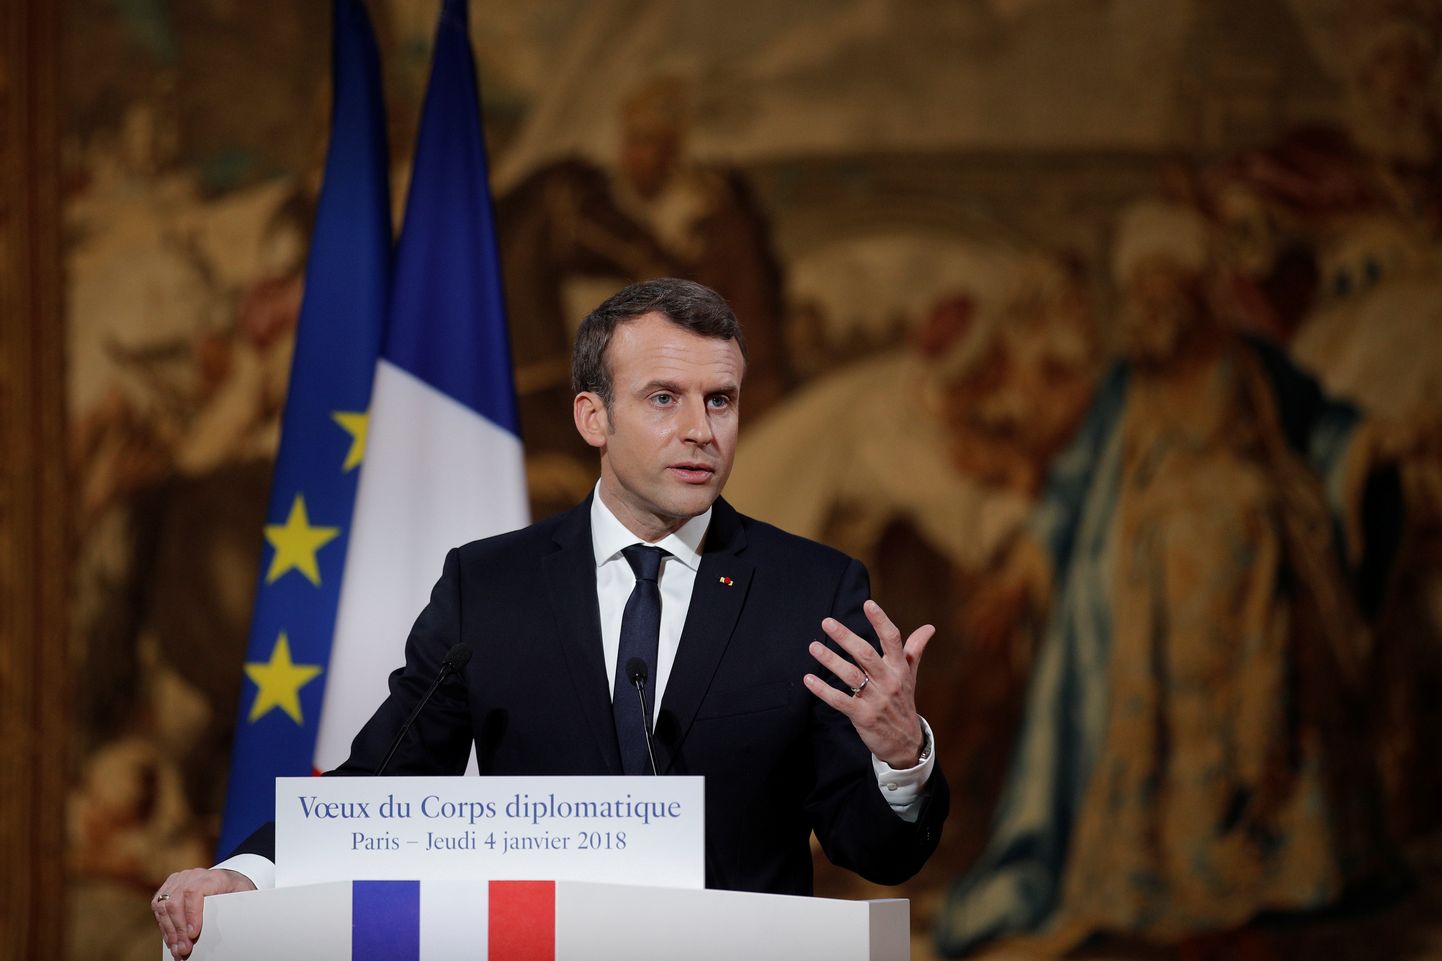 Prantsuse president Emmanuel Macron neljapäeval Prantsusmaa diplomaatilisele korpusele kõnet pidamas.